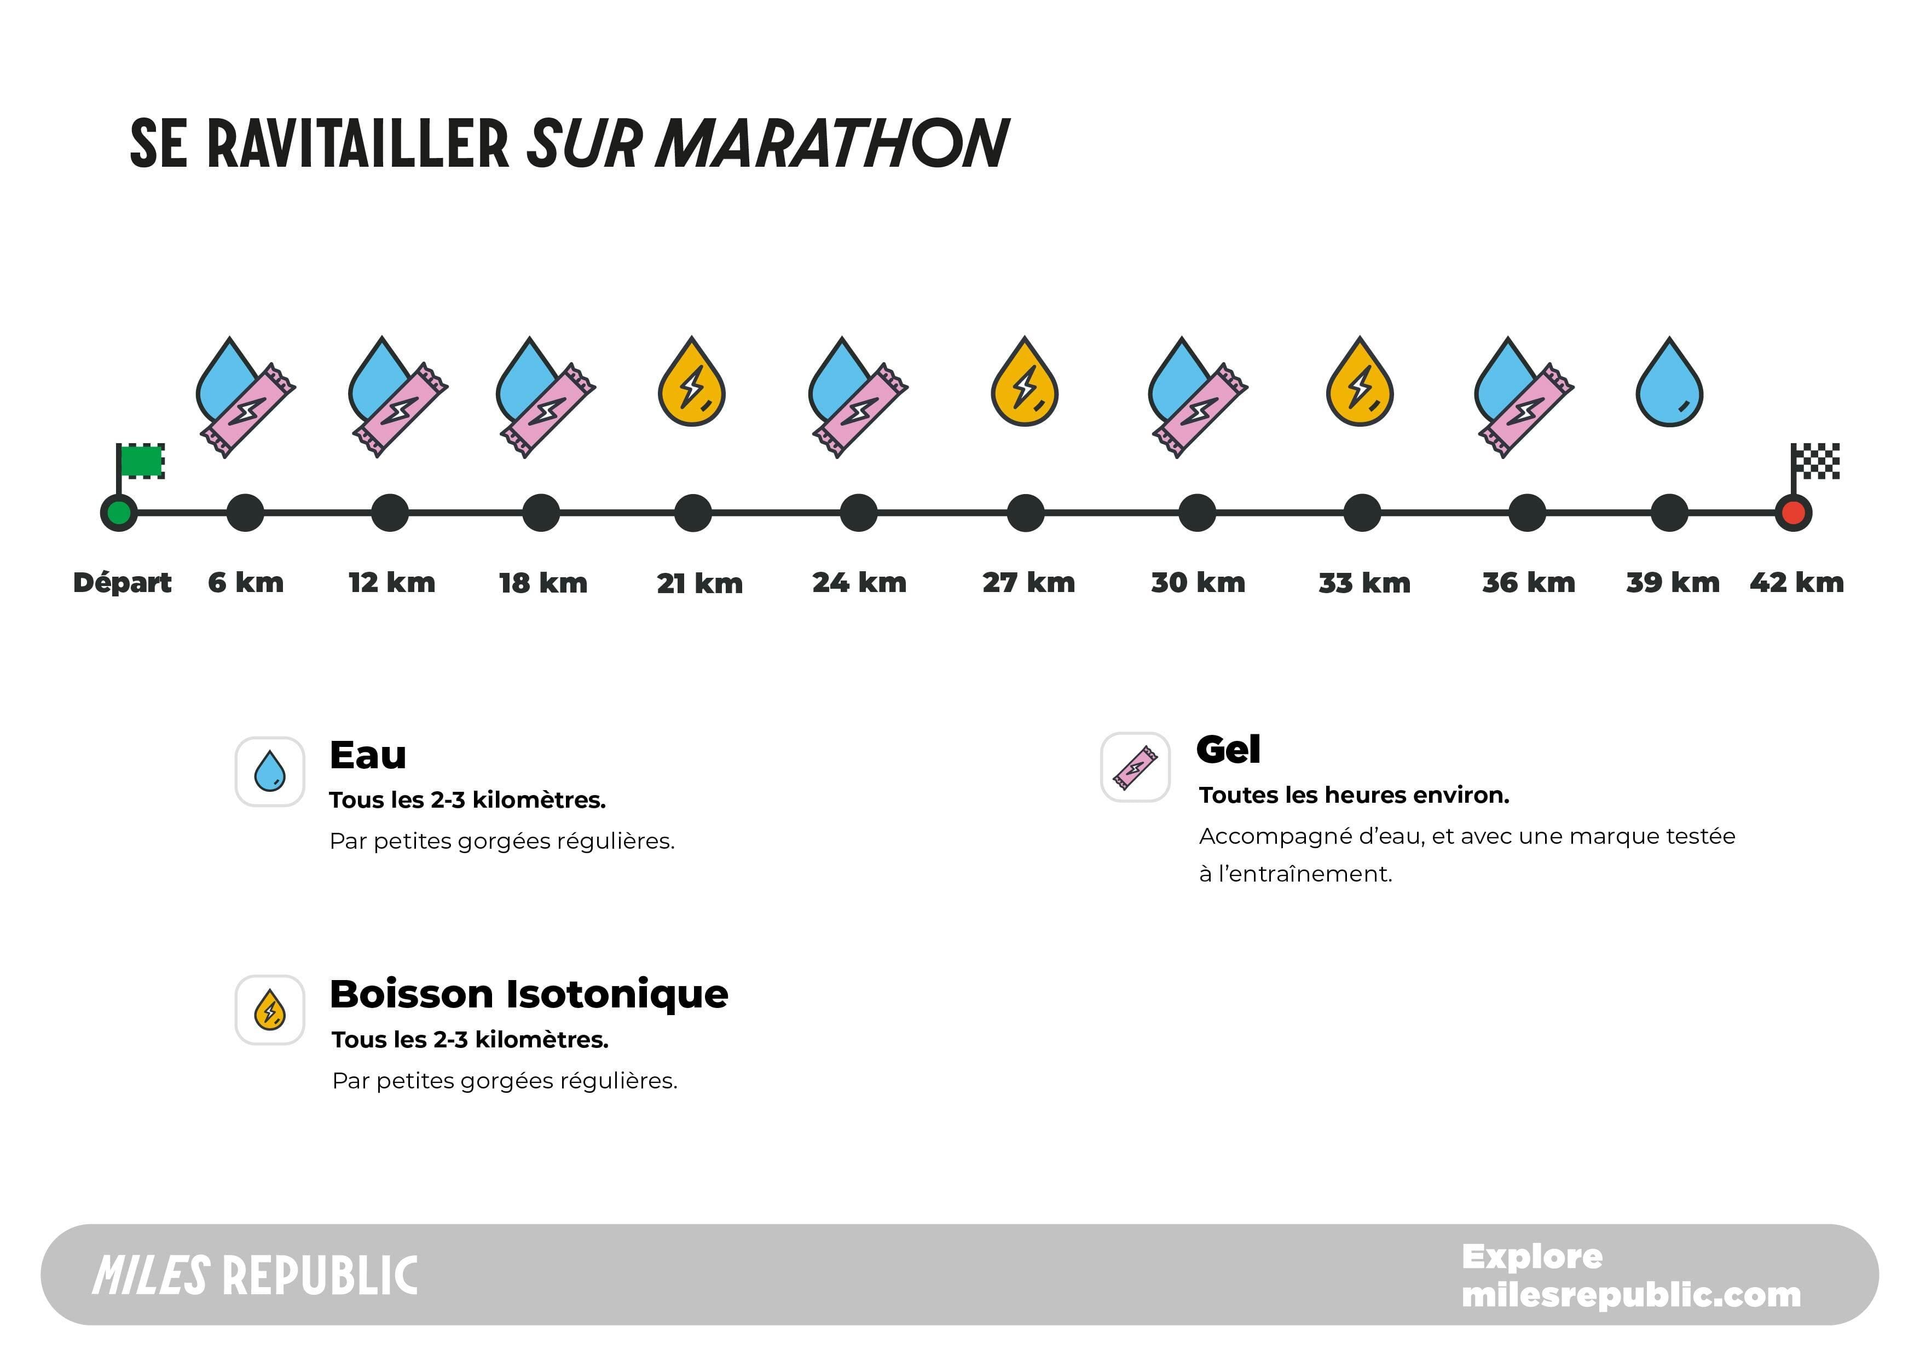 plan de ravitaillement sur un marathon, comprenant alimentation et hydratation pour courir 42 km 